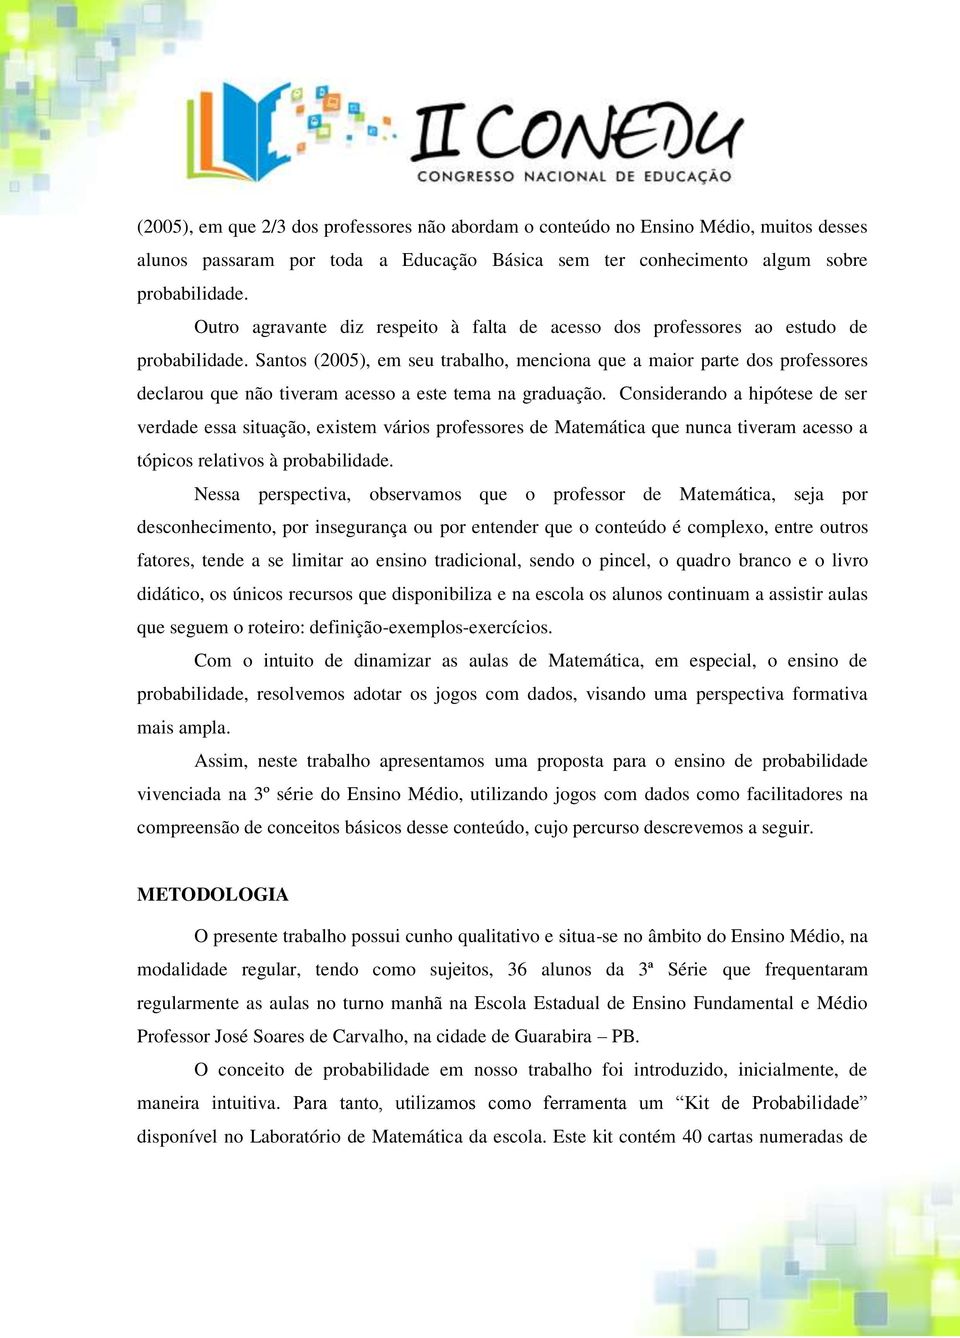 Santos (2005), em seu trabalho, menciona que a maior parte dos professores declarou que não tiveram acesso a este tema na graduação.